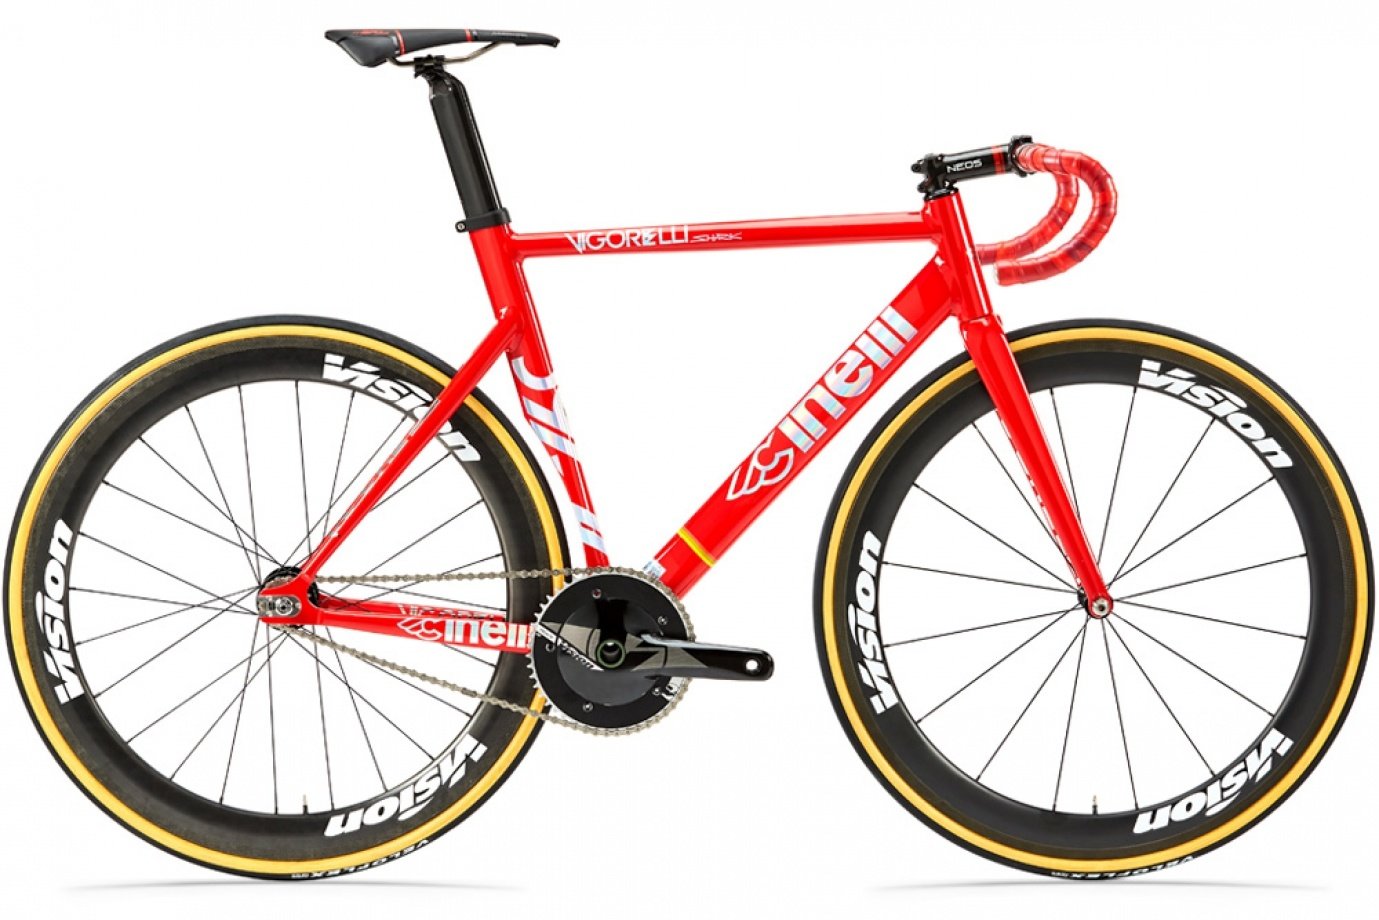 Cinelli márkájú piros, sportos, aerodinamikus singlespeed kerékpár egy sebességgel, sportos nyereggel és ívelt, sportos kormánnyal.